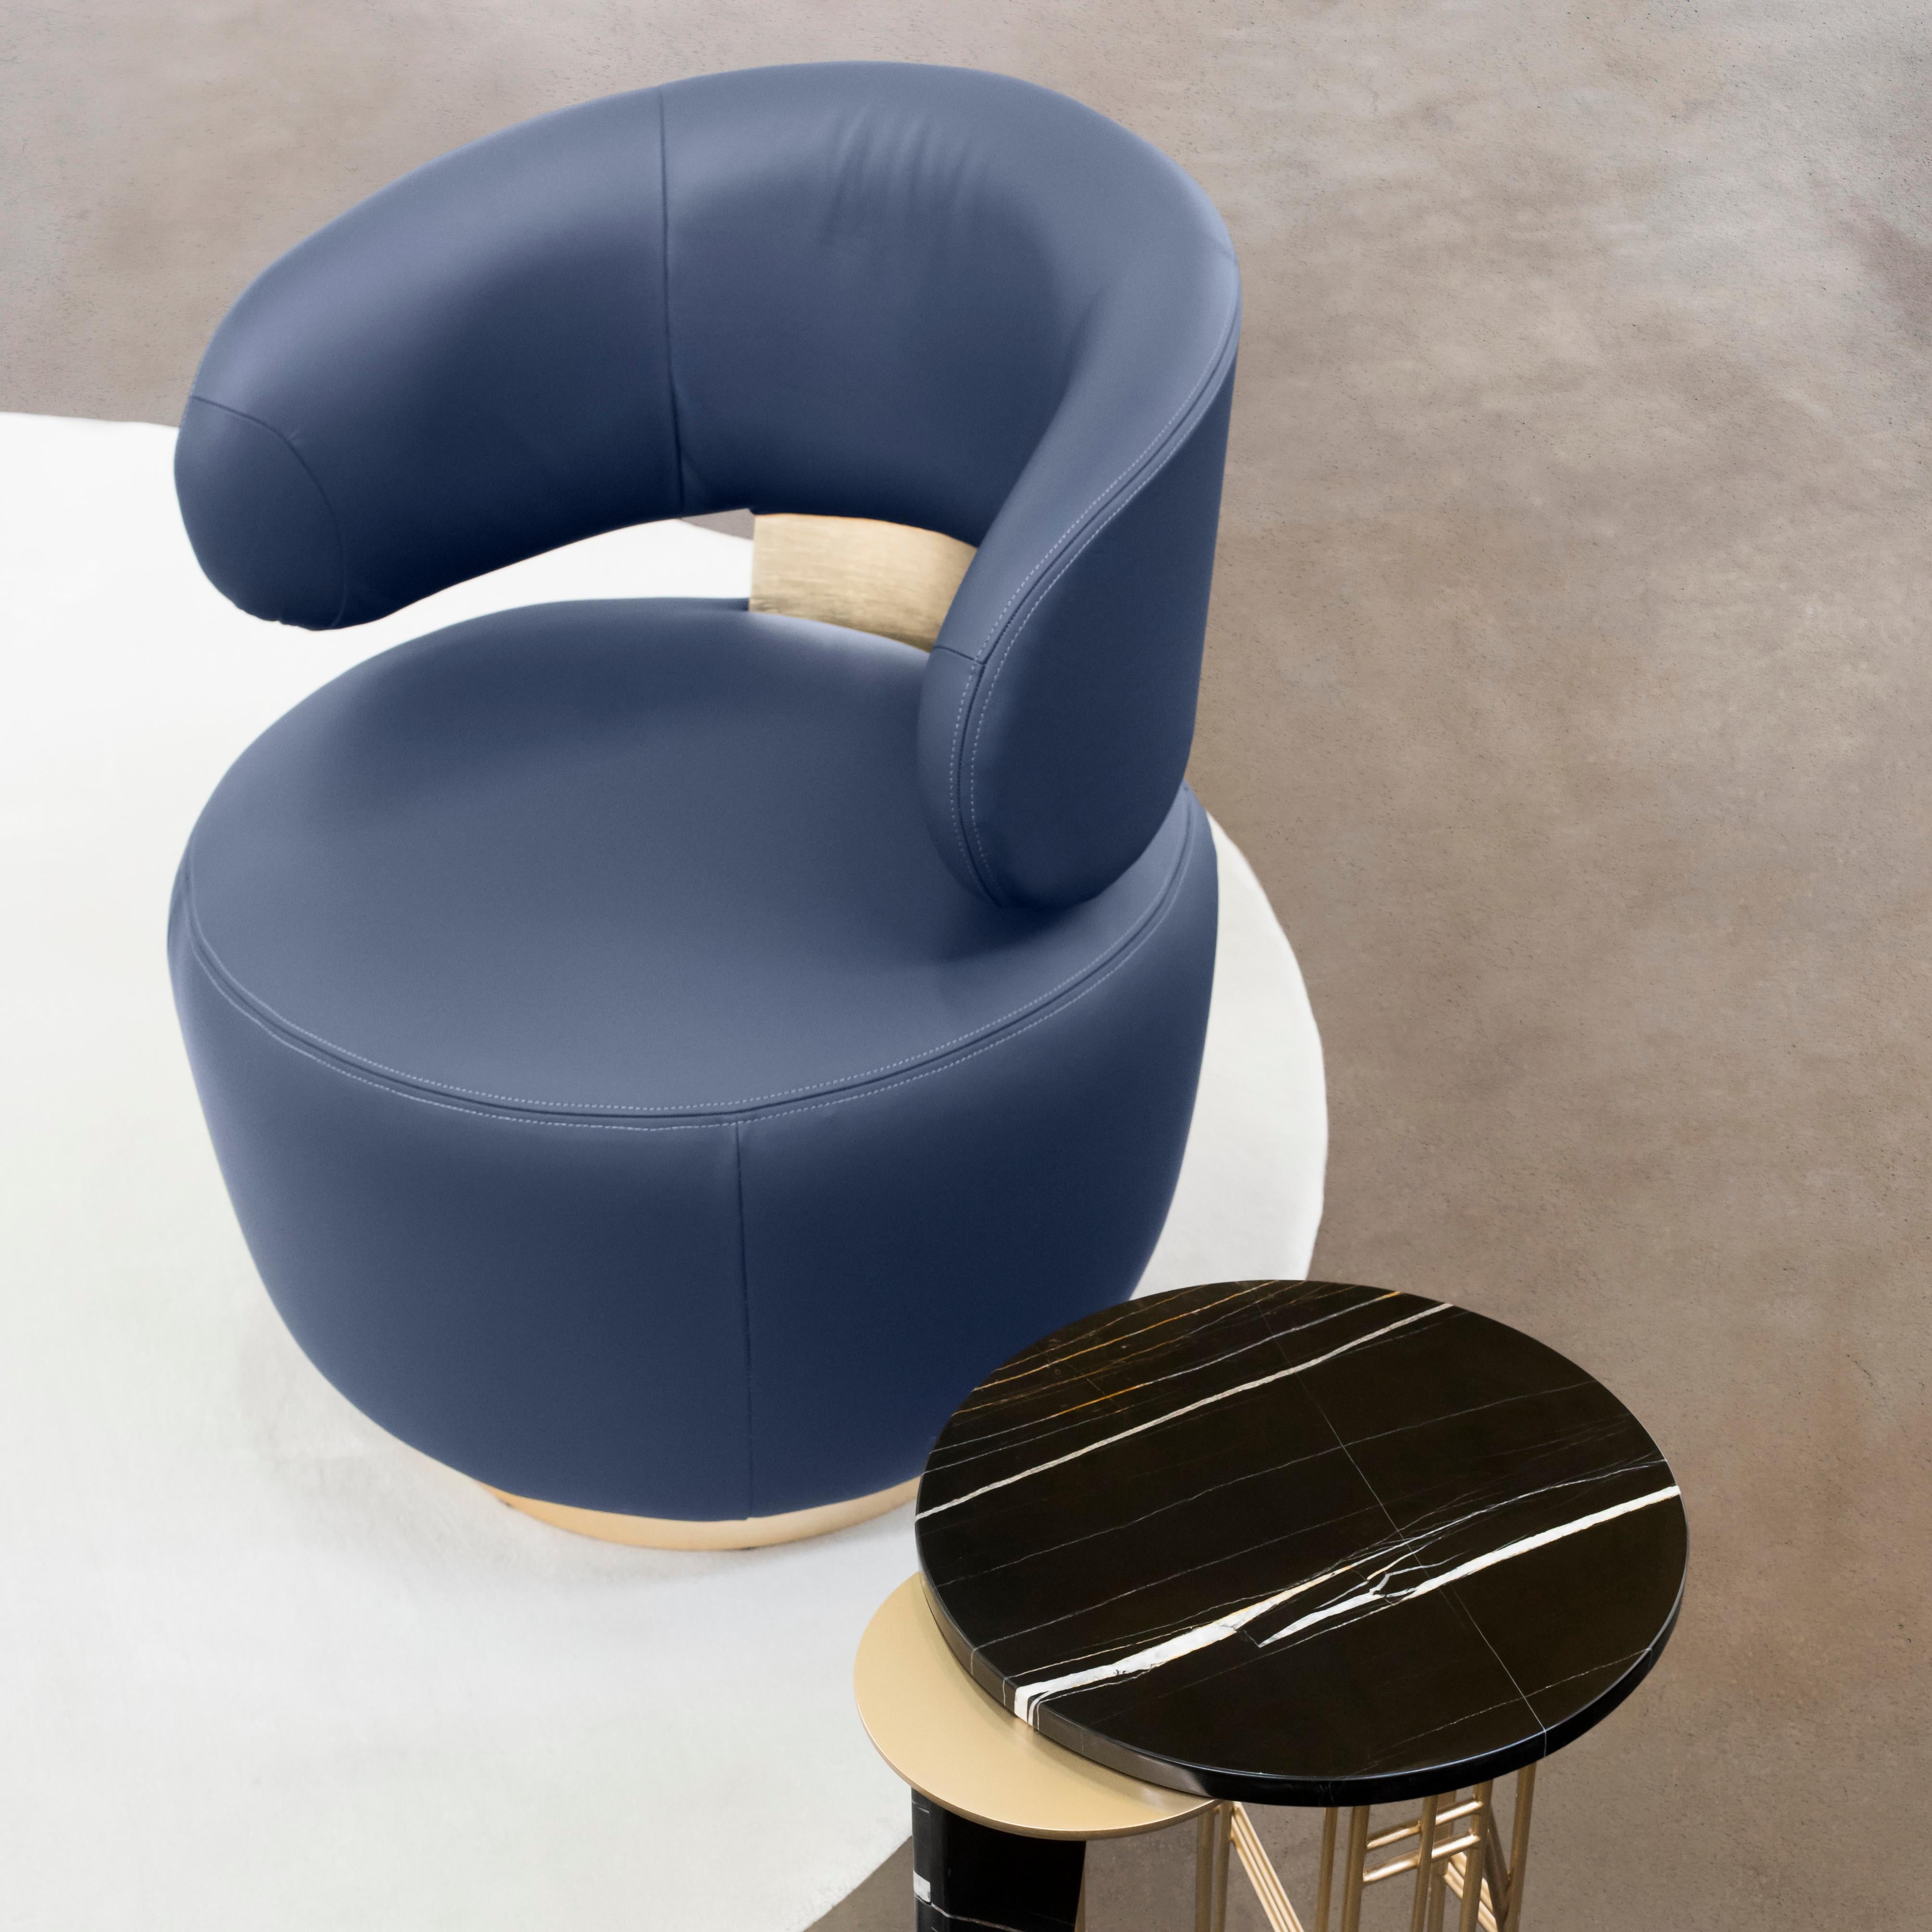 Caju Swivel Lounge Chair, Contemporary Collection, Handcrafted in Portugal - Europe by Greenapple.

La chaise longue Caju est un meuble tendance qui personnifie la forme organique d'un cajou. Rembourré en cuir italien, le design de la chaise longue